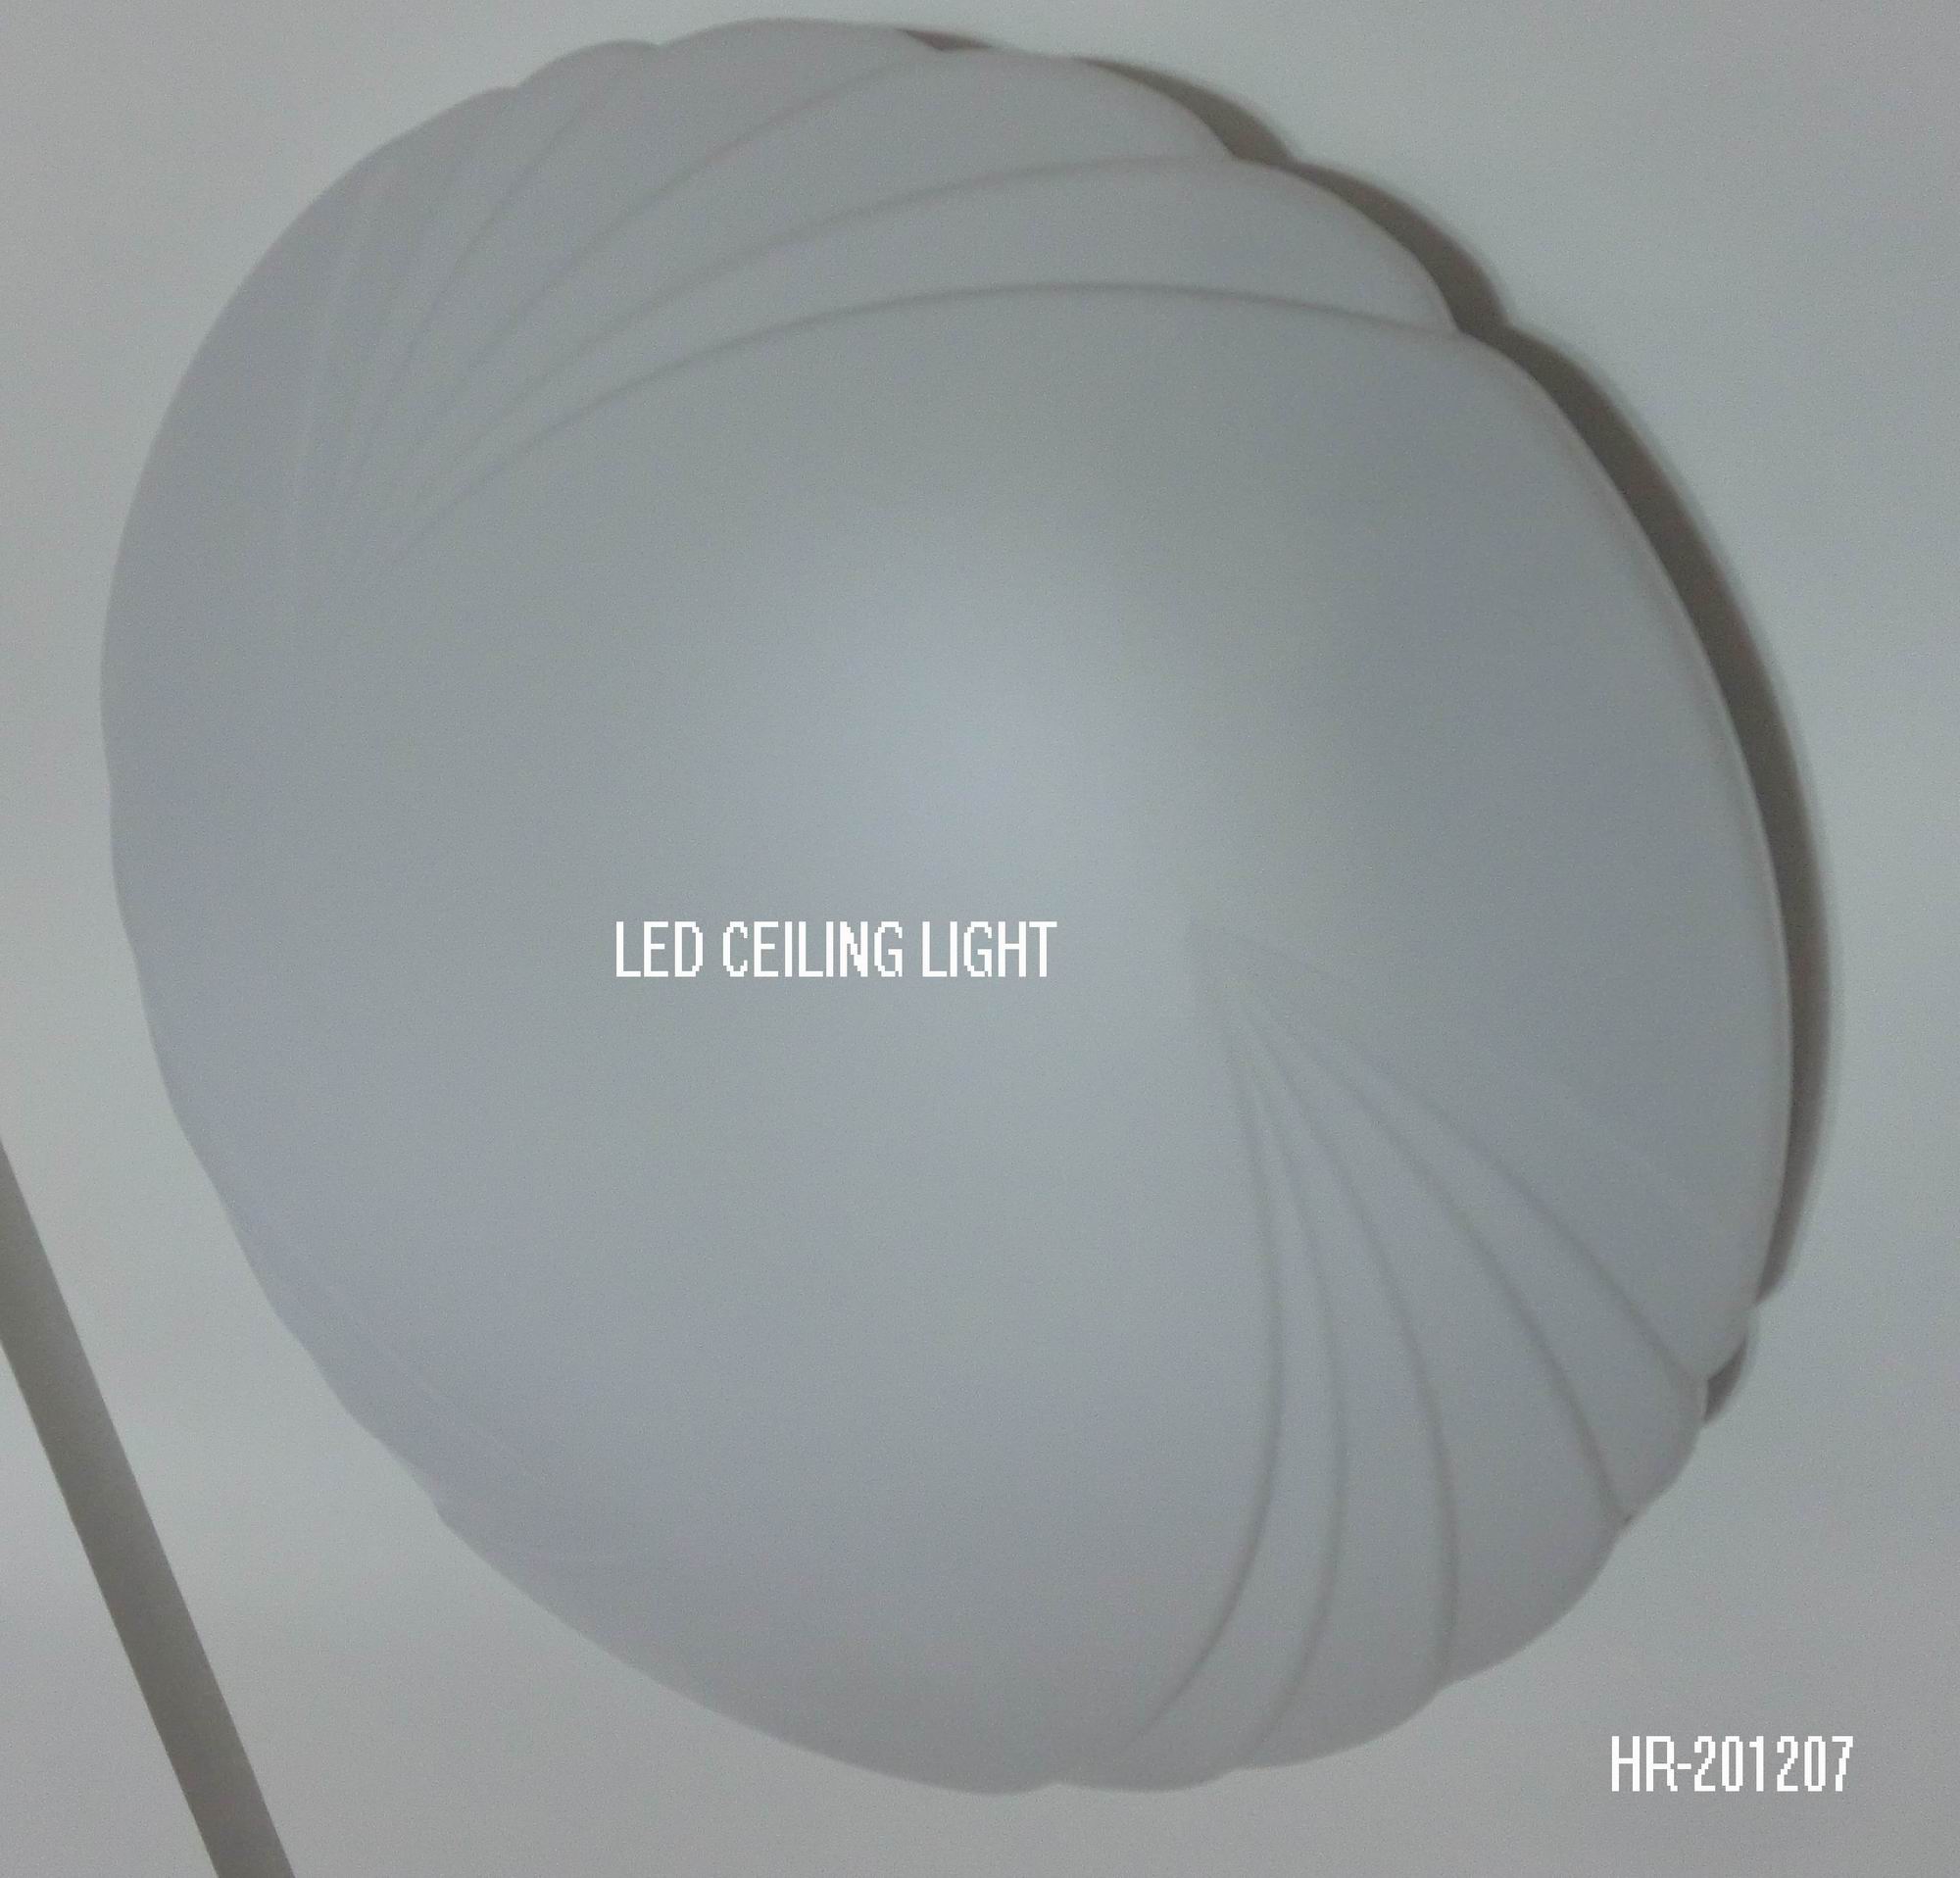 LED CEILING LIGHT HR-201207